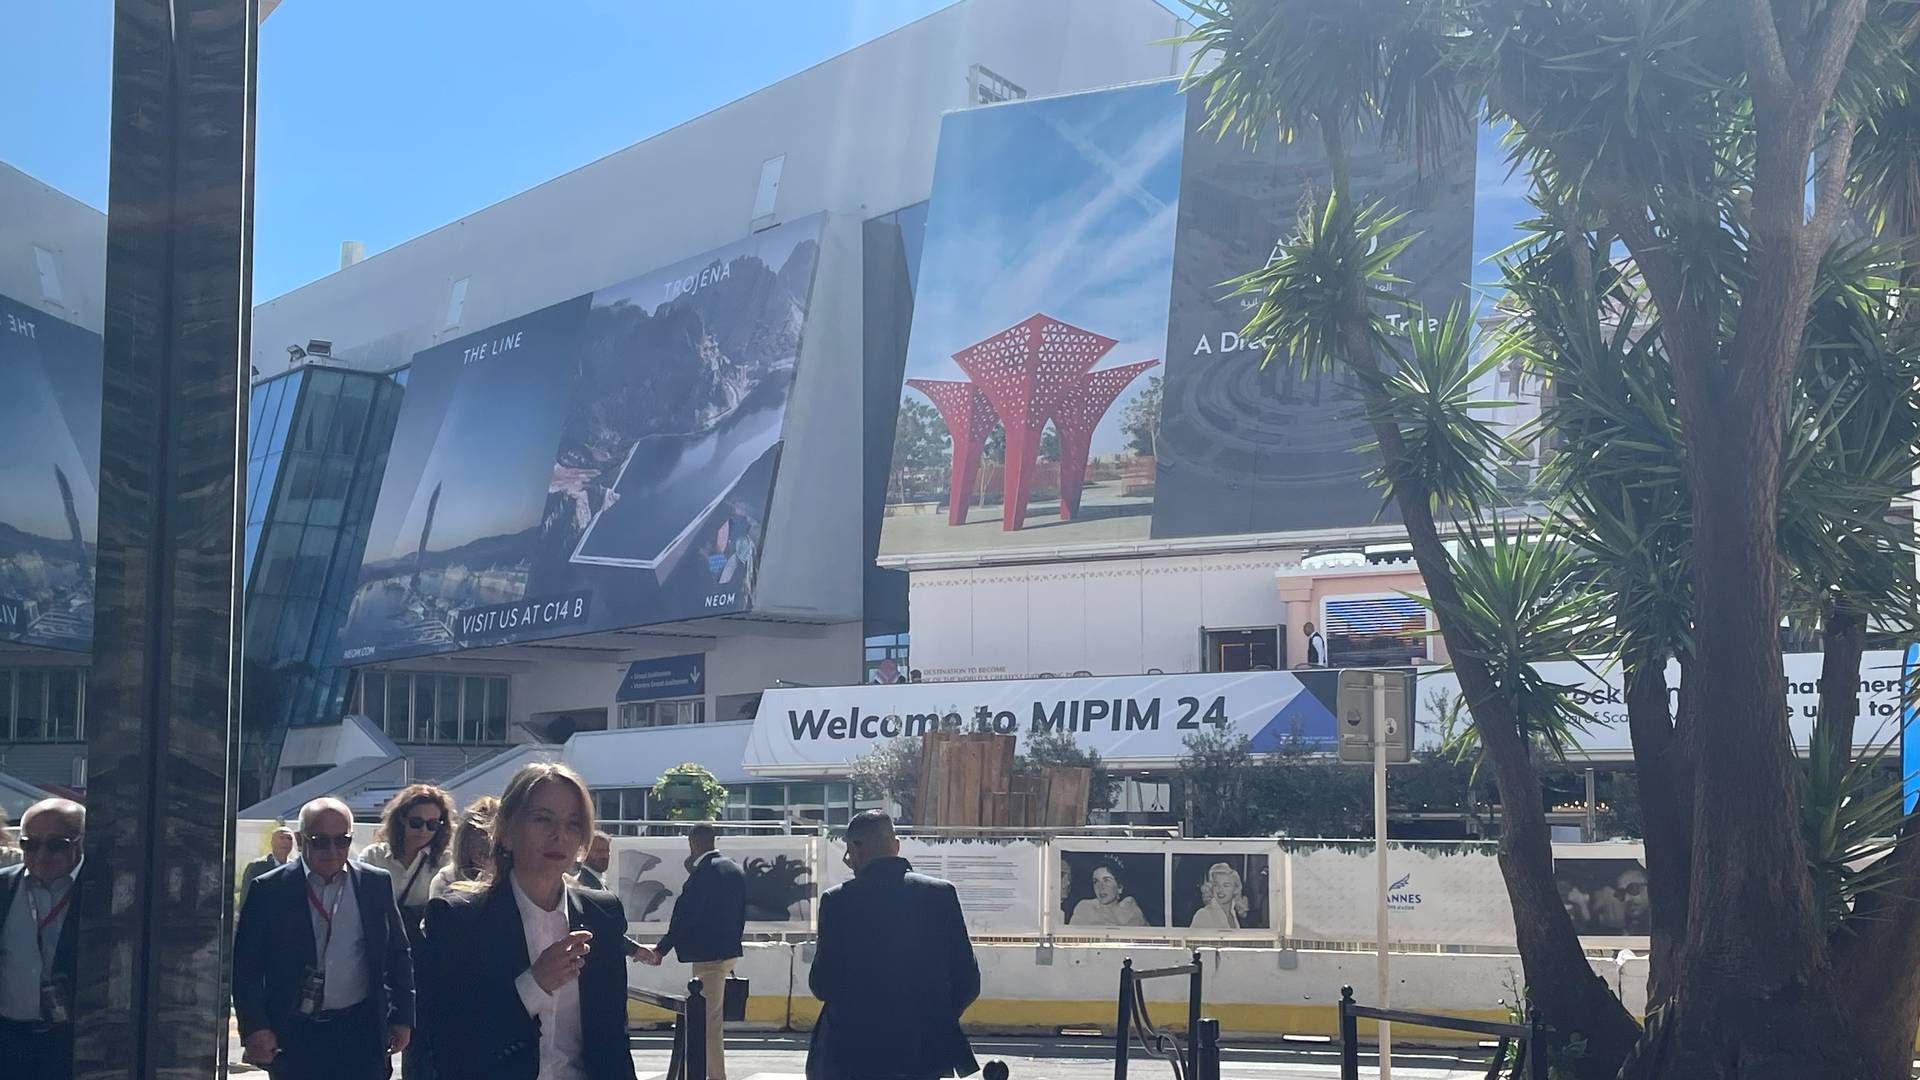 Der var brug for SPF i Cannes i løbet af sidste uge, hvor Mipim-messen, verdens største ejendomsmesse, løb af stablen. Der er dog stadig ikke fuld sol over ejendomsmarkedet, lød det fra brancheaktørerne. | Foto: Ida Kramhøft Jensen